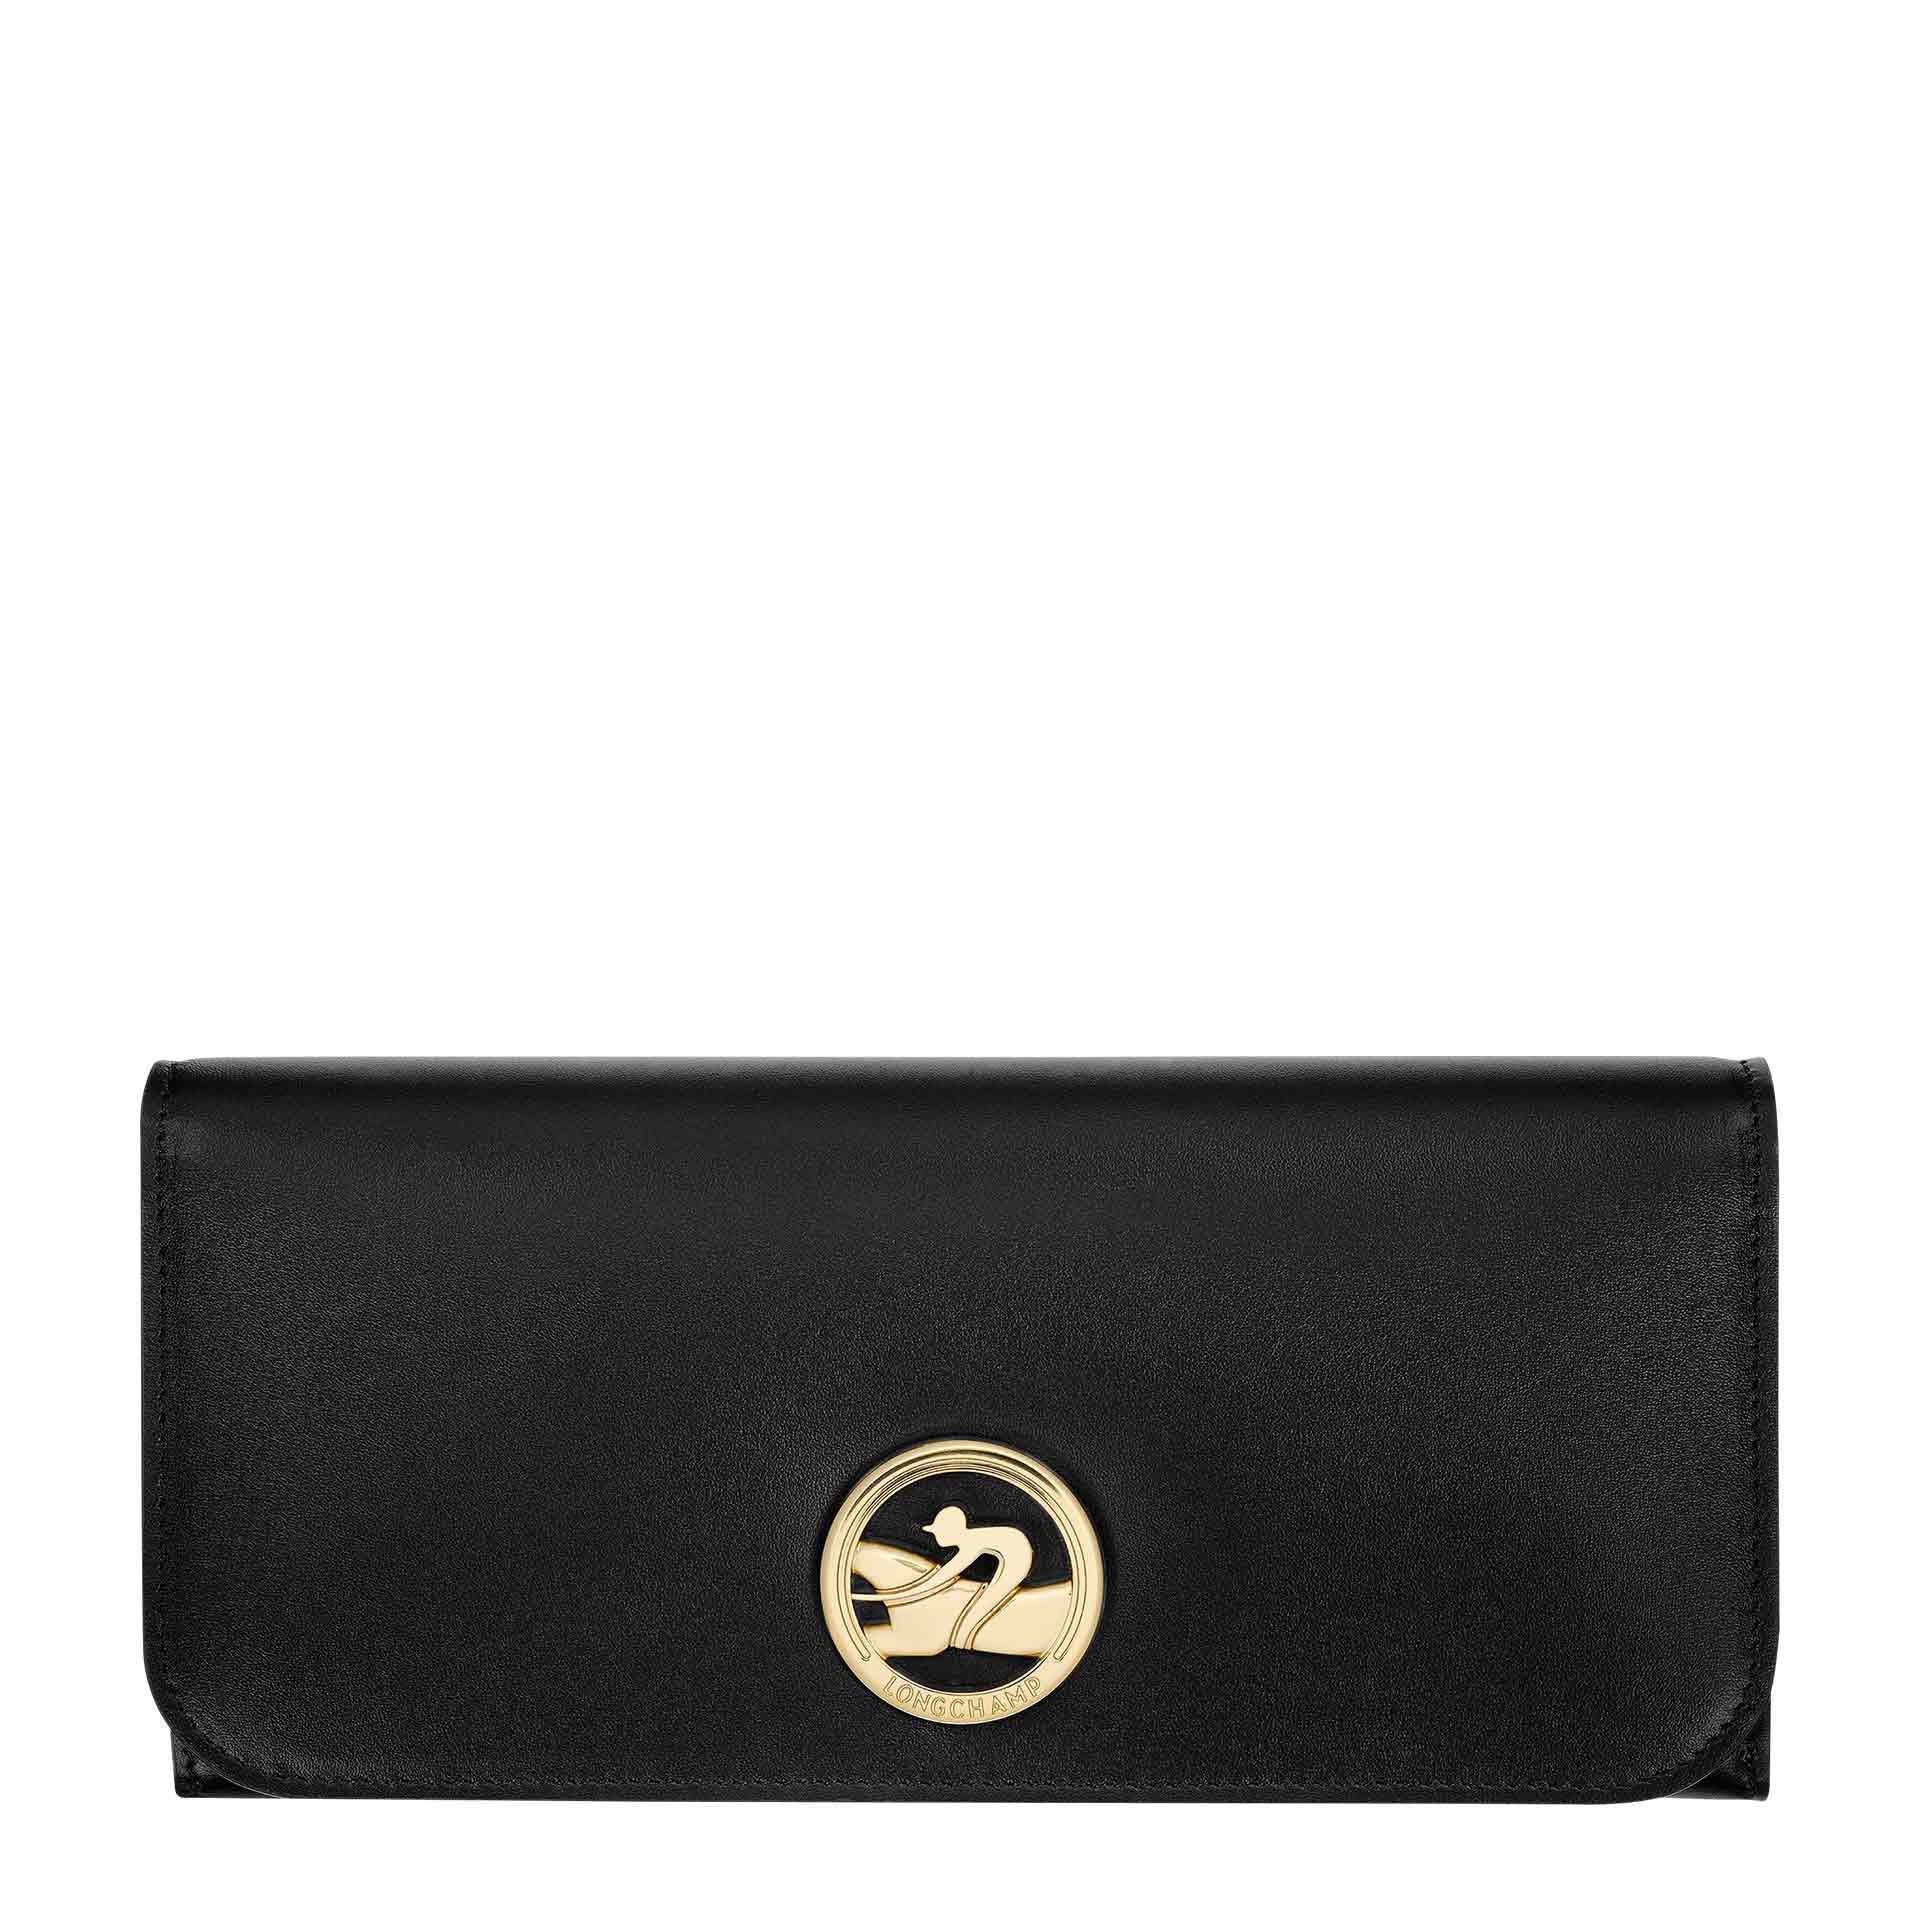 Longchamp Box-Trot Lange Damen Geldbörse mit Überschlag black